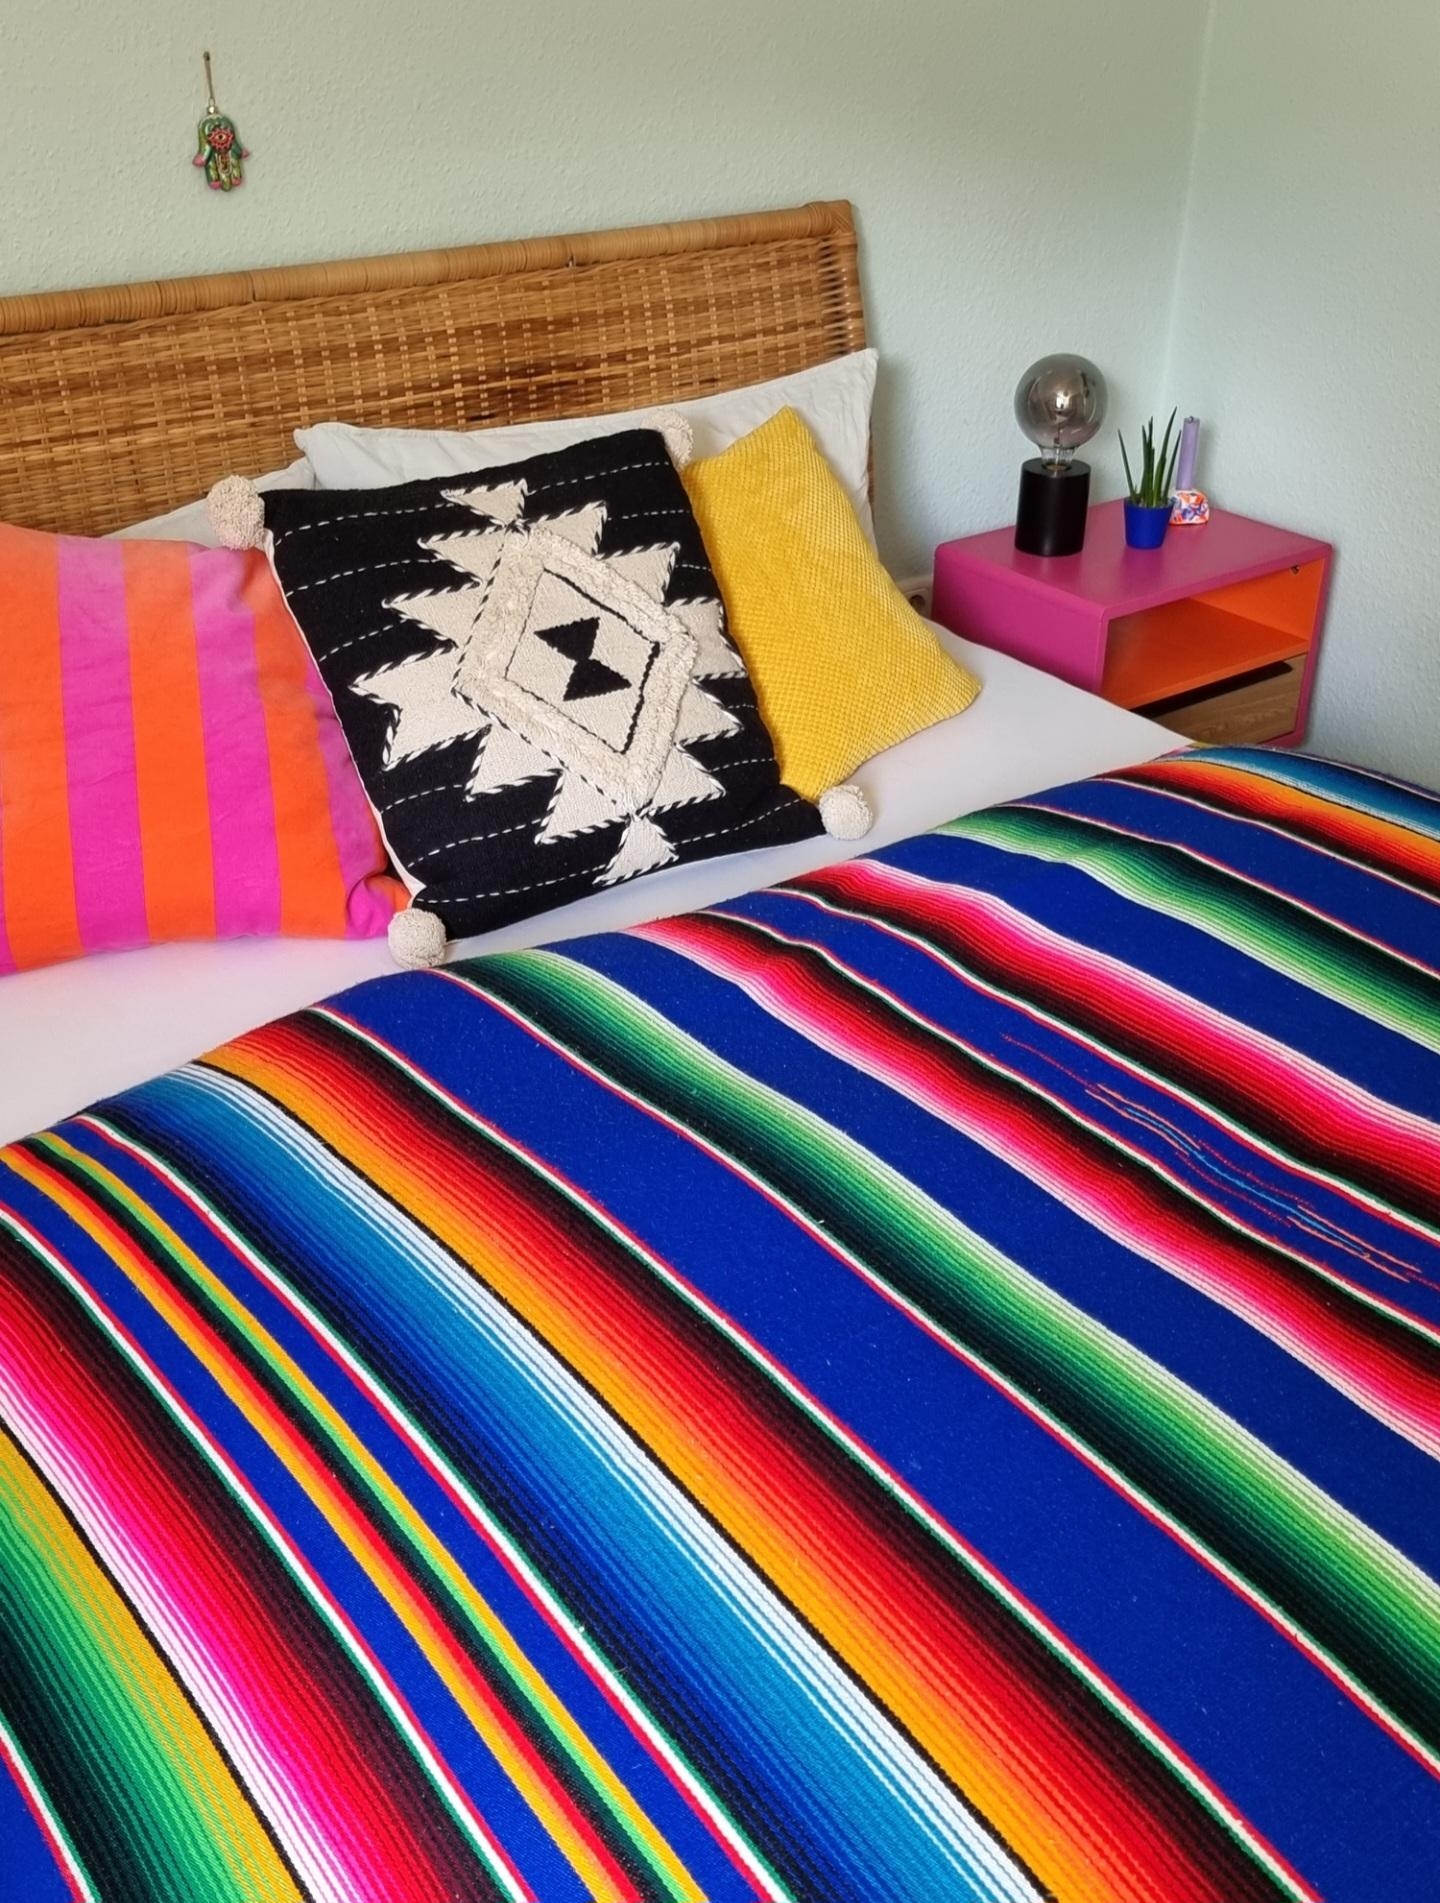 Eine gute Nacht🌙 bei den tropischen Temperaturen #Schlafzimmer #bedroom #bohostyle #teamcolourful #Tagesdecke #myhome 